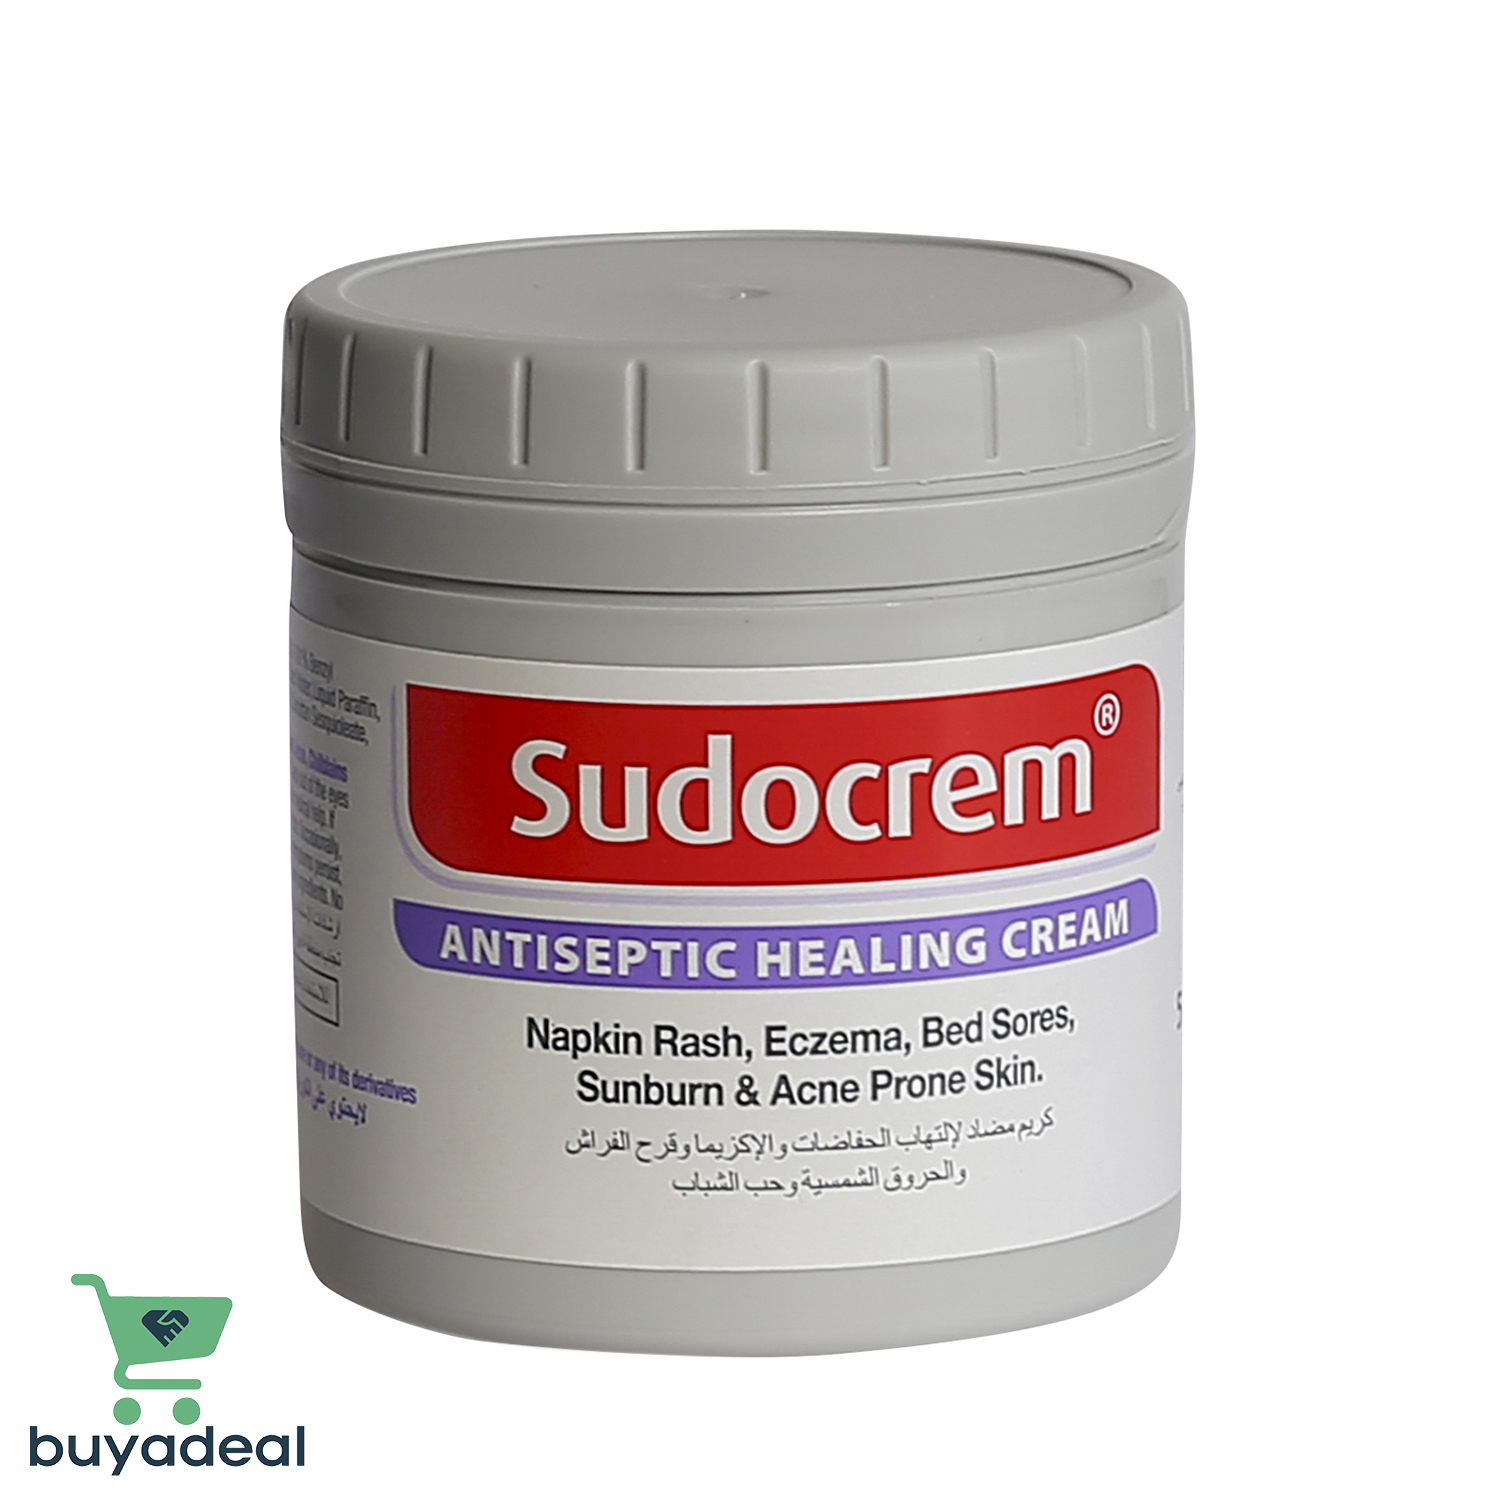 Buyadeal Product Sudocrem Antiseptic Healing Cream, 125g